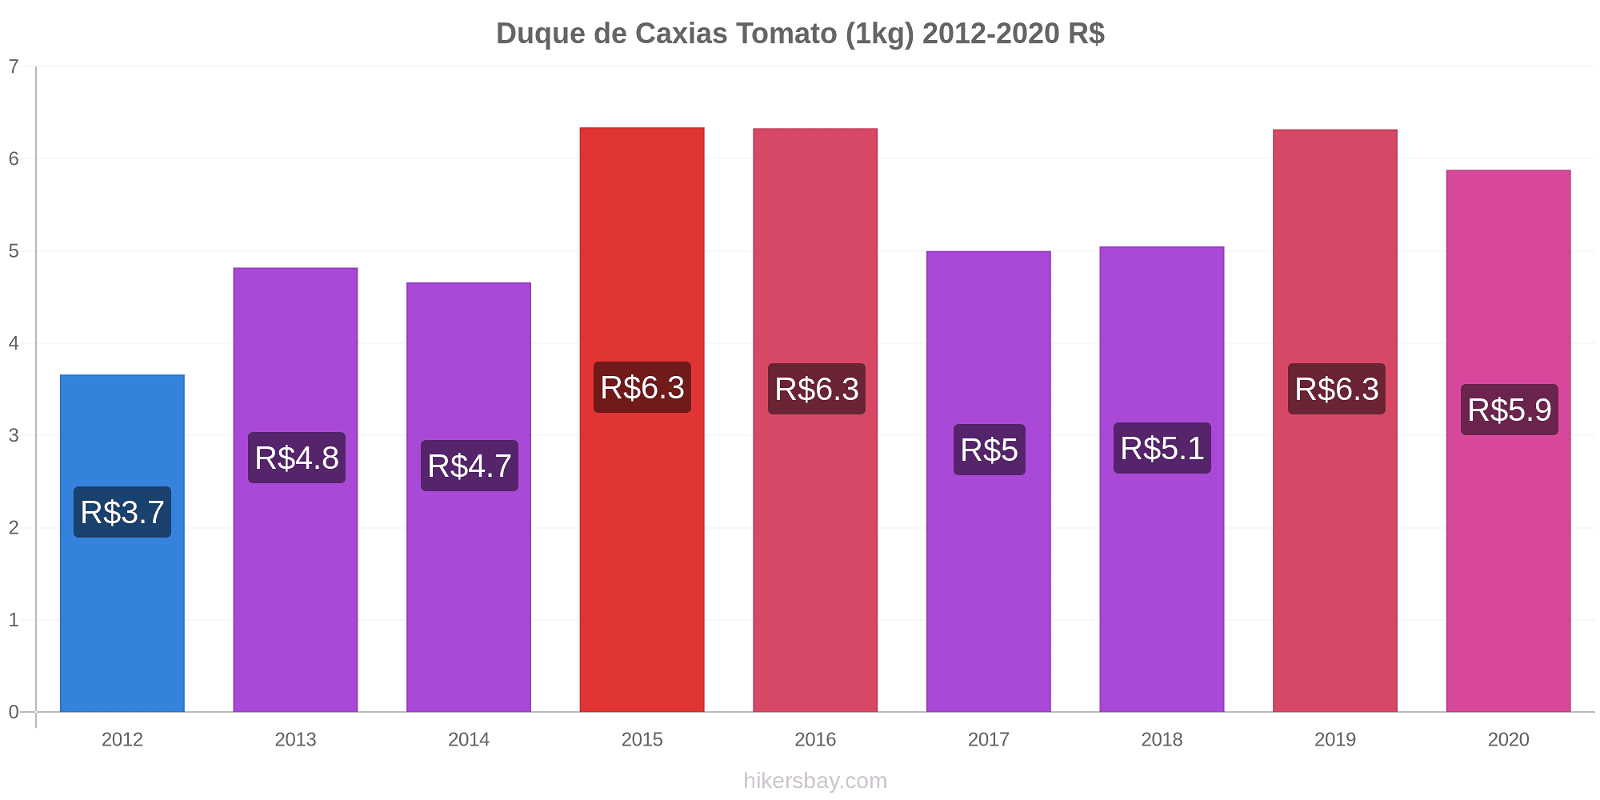 Duque de Caxias price changes Tomato (1kg) hikersbay.com